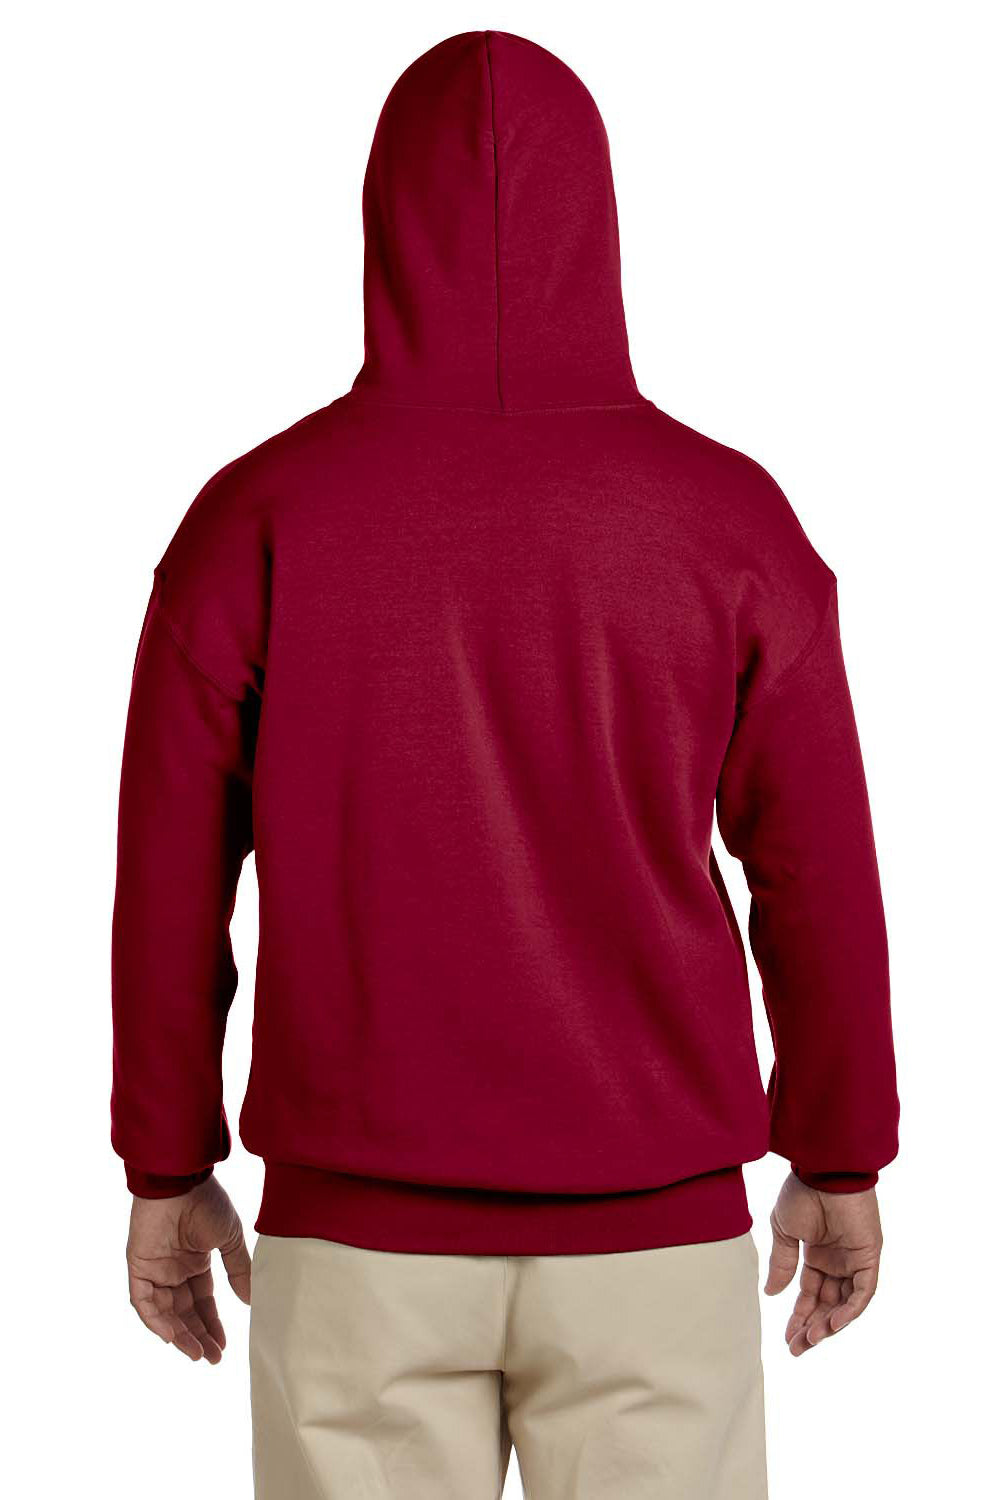 Gildan G185 Mens Hooded Sweatshirt Hoodie Cardinal Red Back